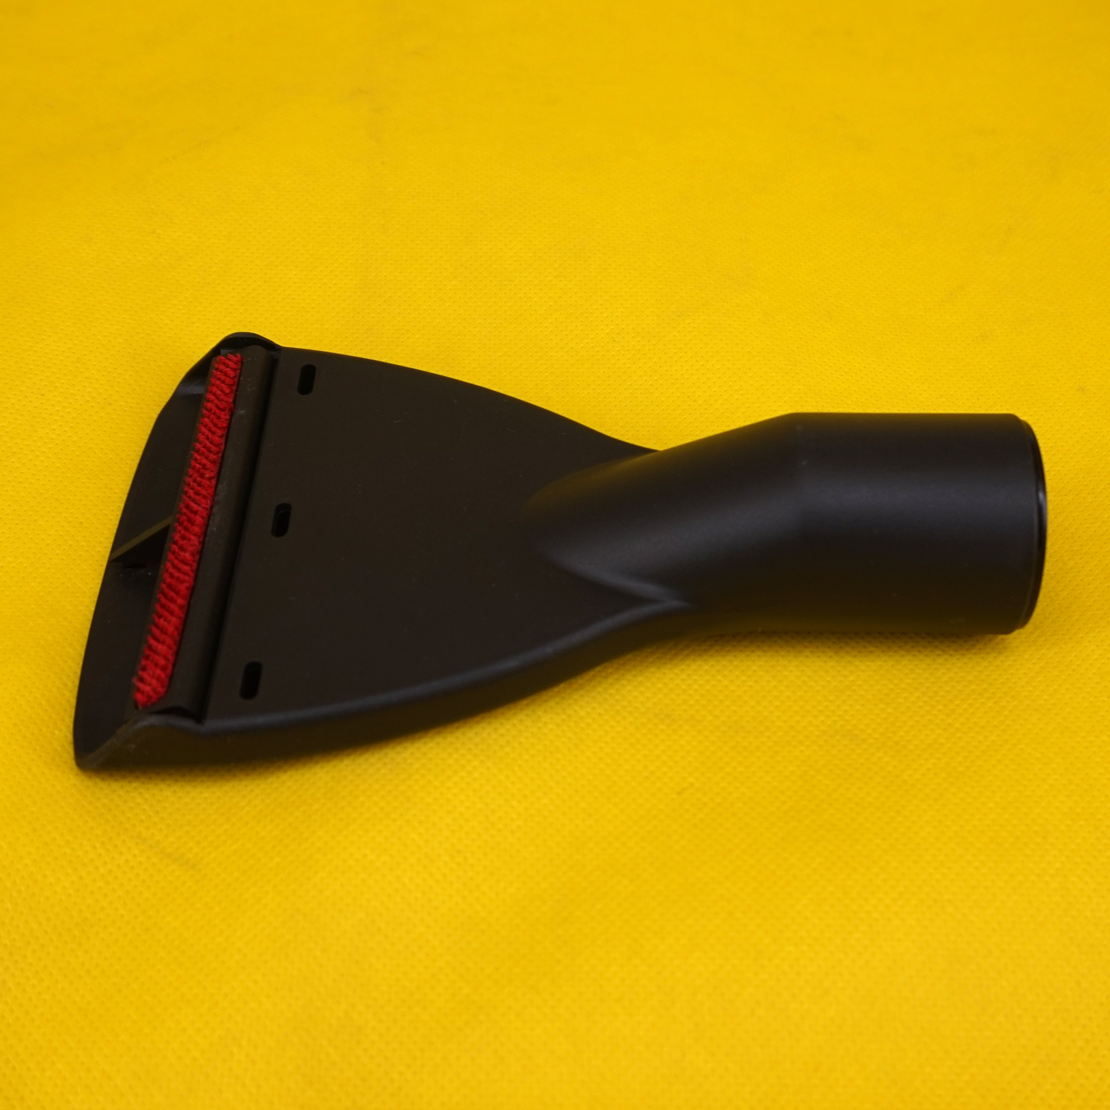 1*32mm Universal Vacuum Cleaner Carpet Floor Nozzle Brush Attachment Head Tools 